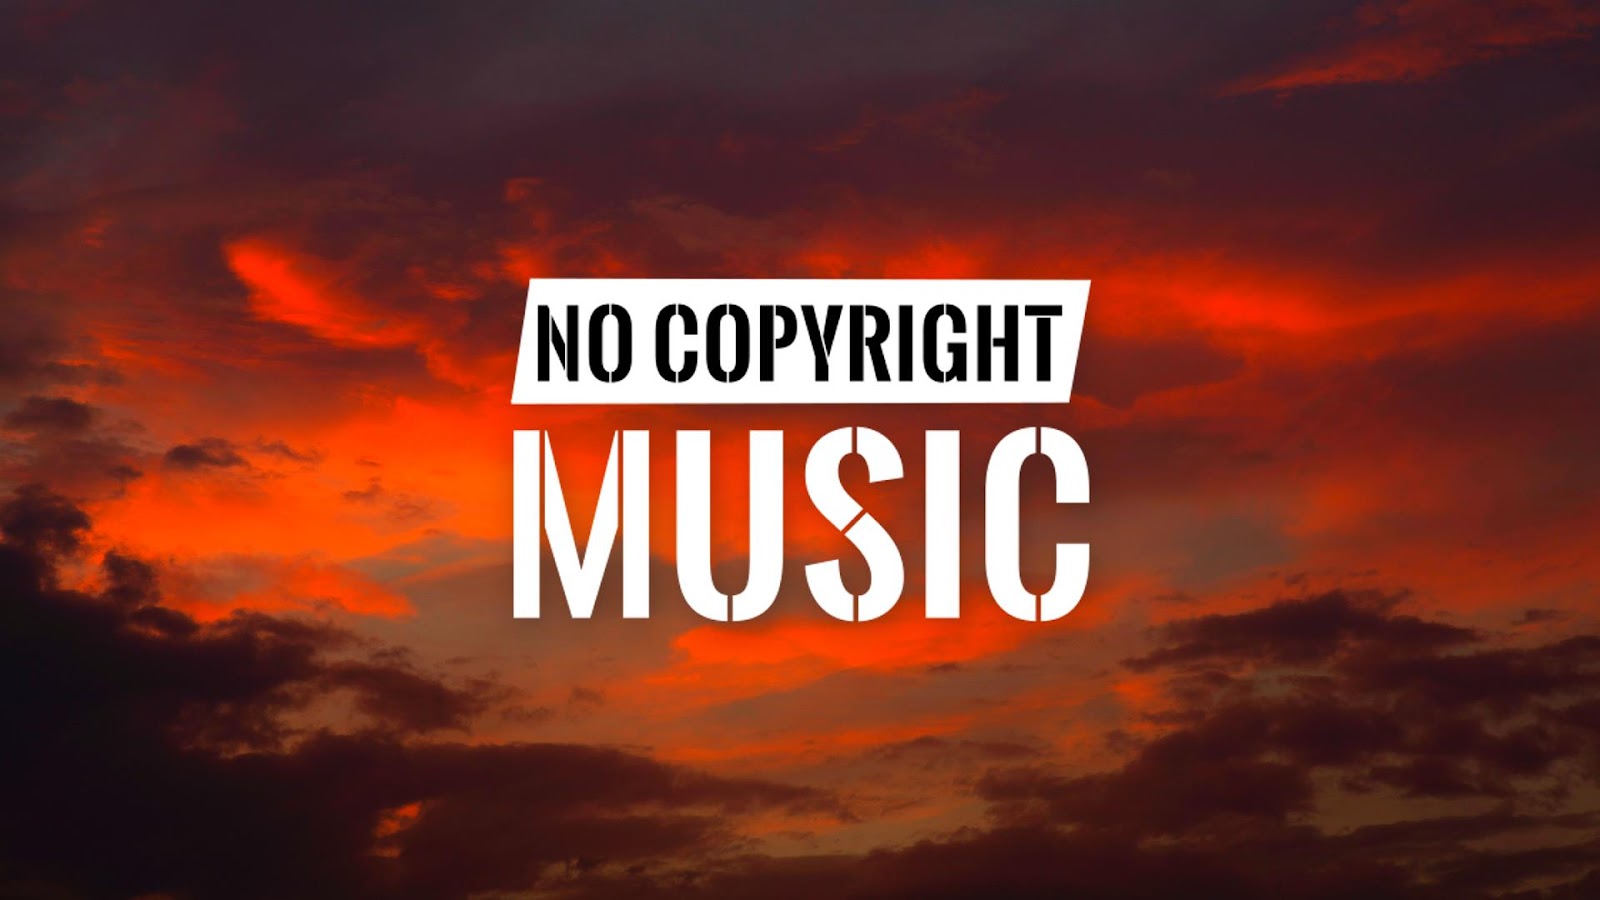 Where do I find no copyright music?